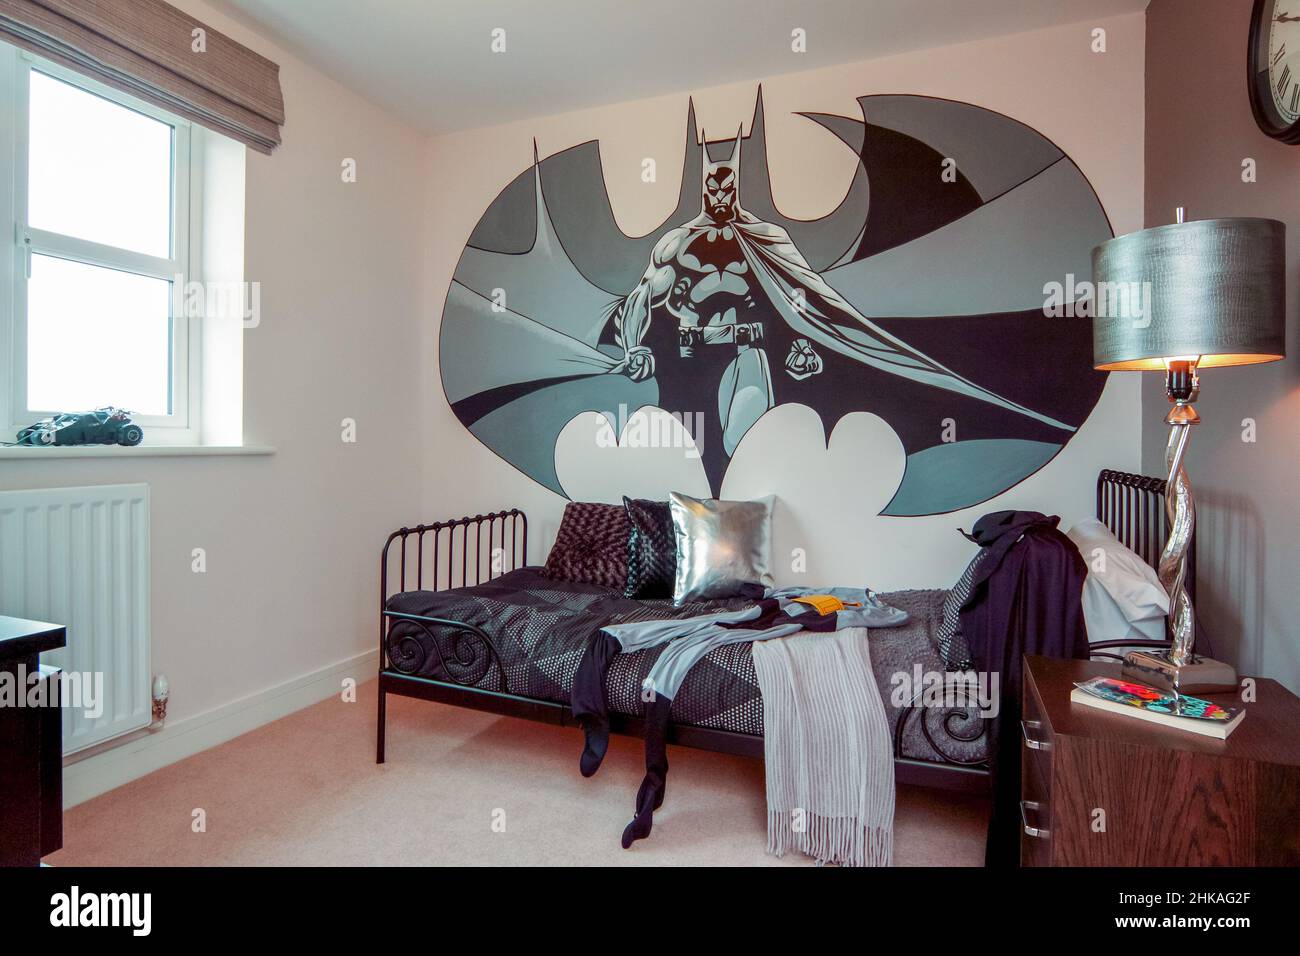 Bambini ragazzi camera da letto con drammatico muro murale di batman, letto singolo, abito batman, telaio letto in metallo Foto Stock